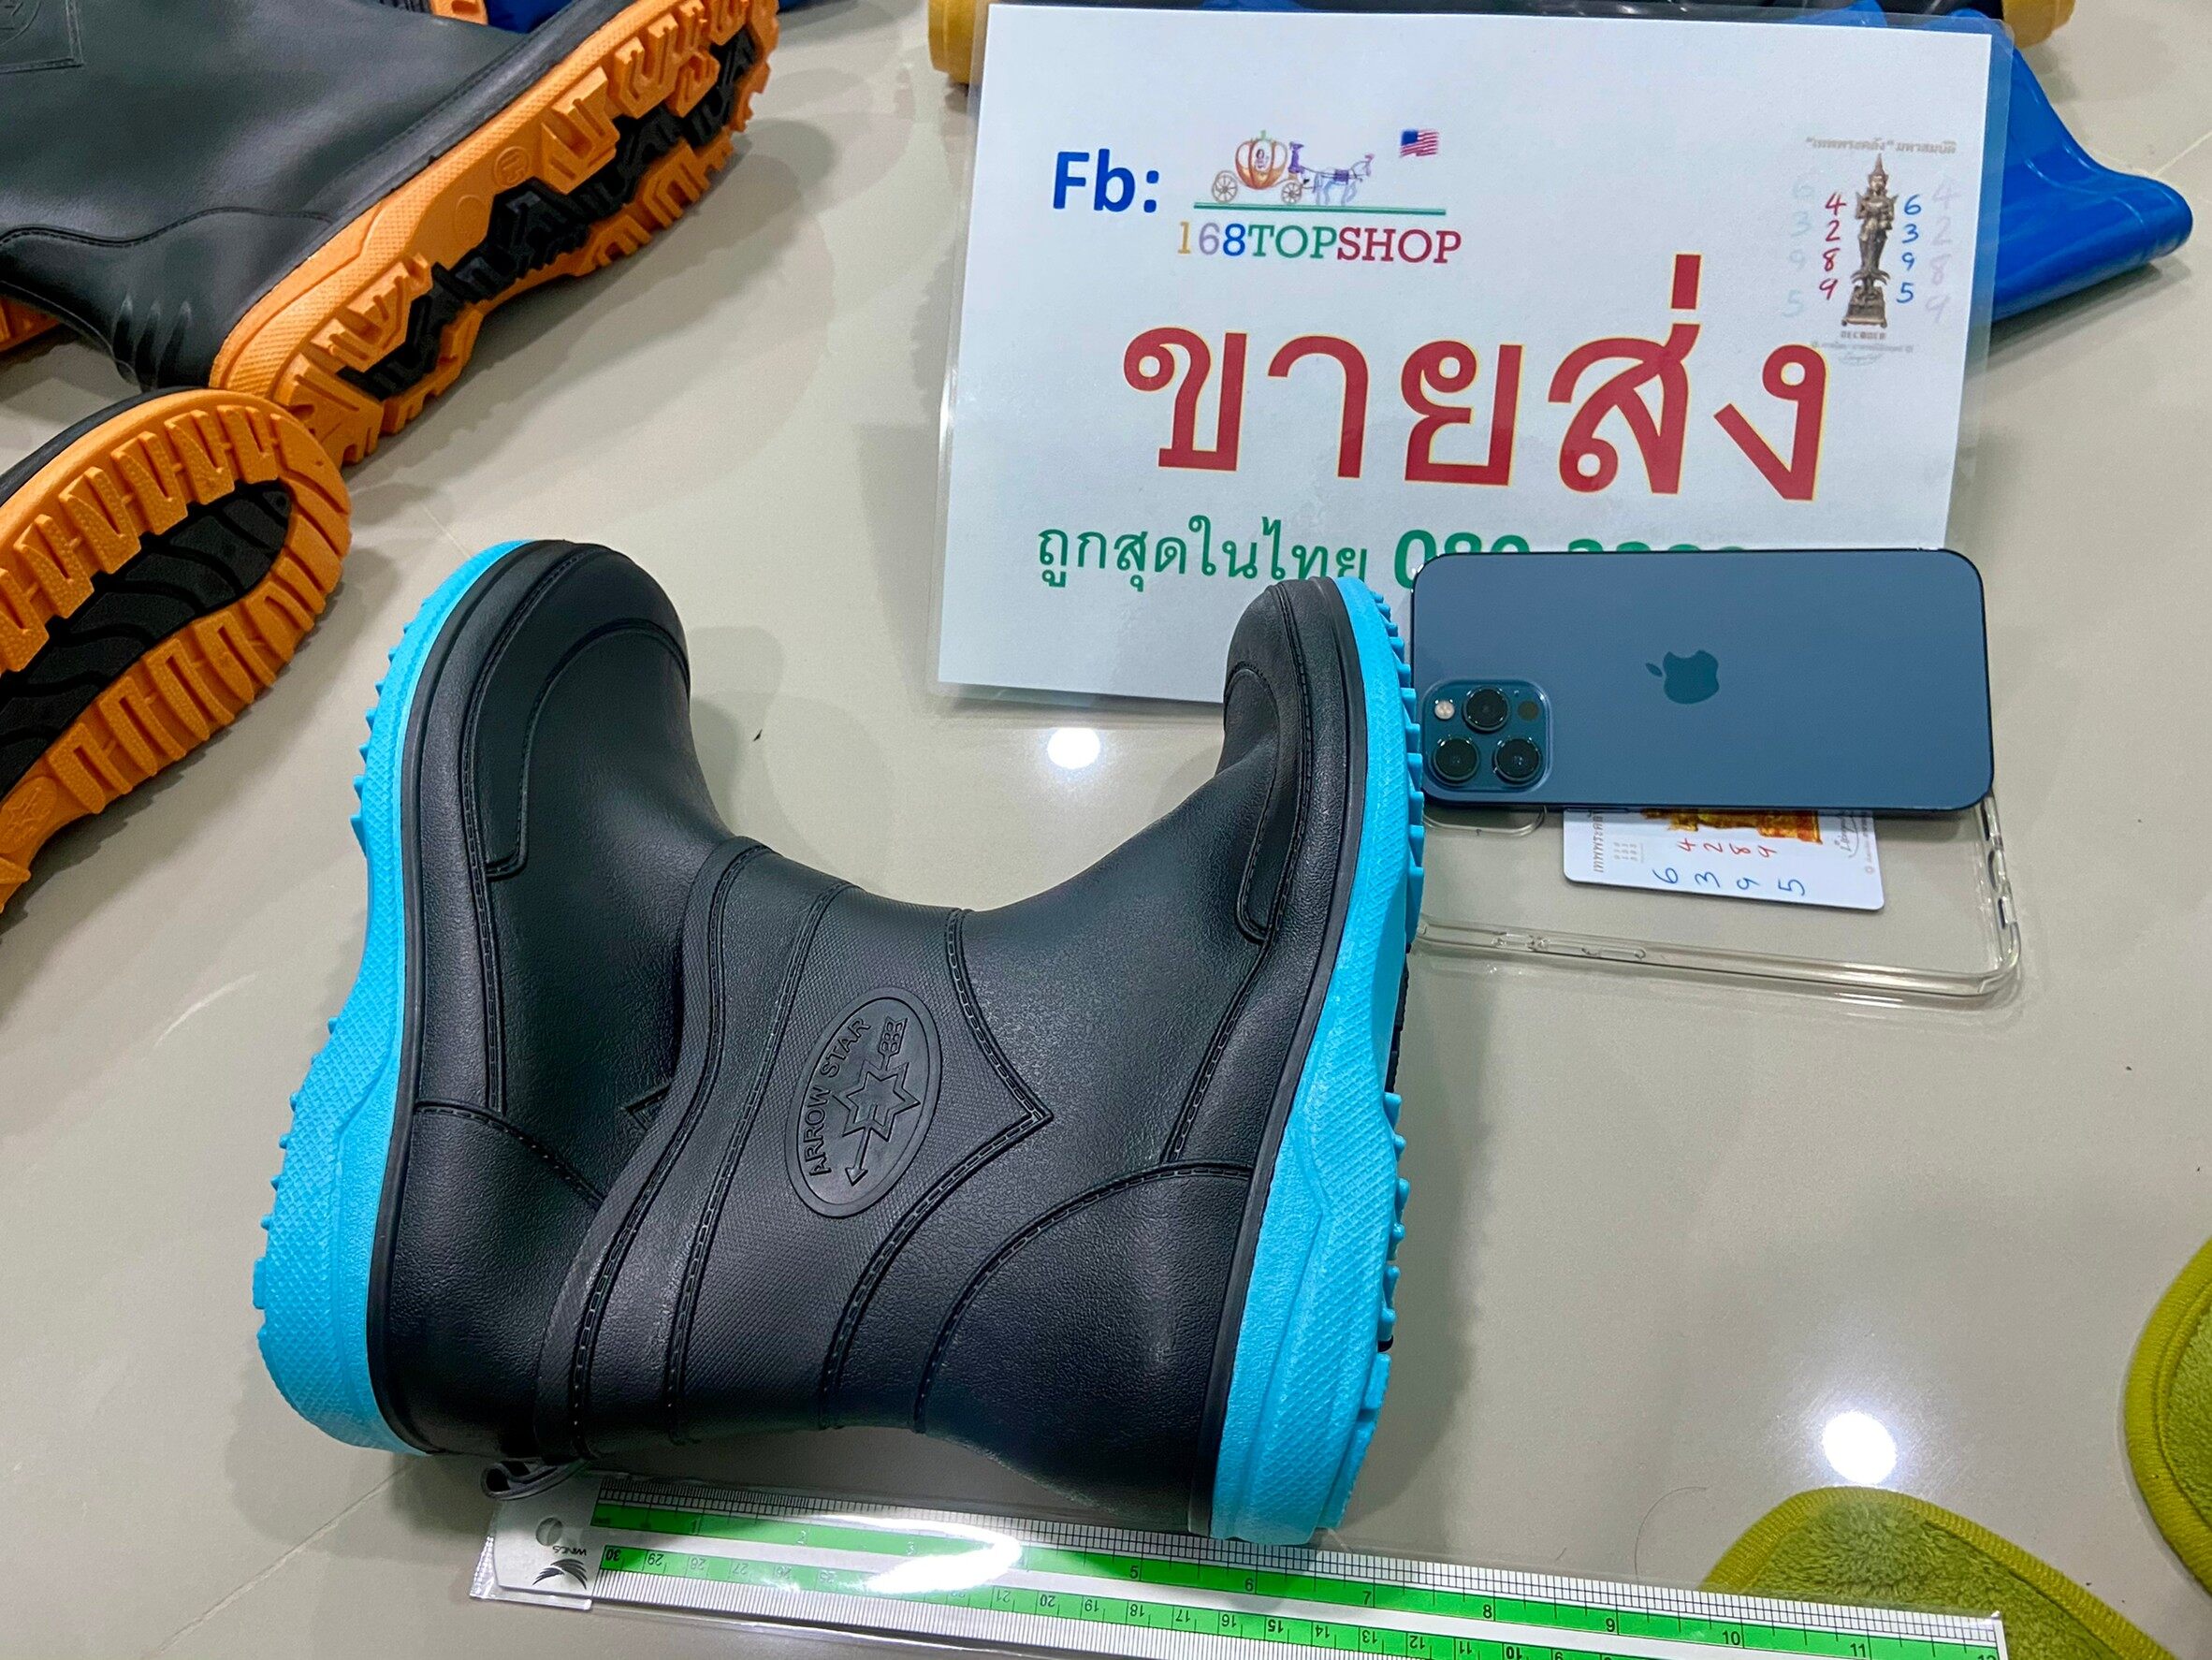 รองเท้าบูท Arrow star A555 7"นิ้ว ถูกสุดในไทย บู๊ตสั้น นิ่ม สบายมาก พื้นสีเขียว ฟ้า ส้ม Rubber Rain Shorty Boots บู๊ตกันฝน บูทตลาดสด